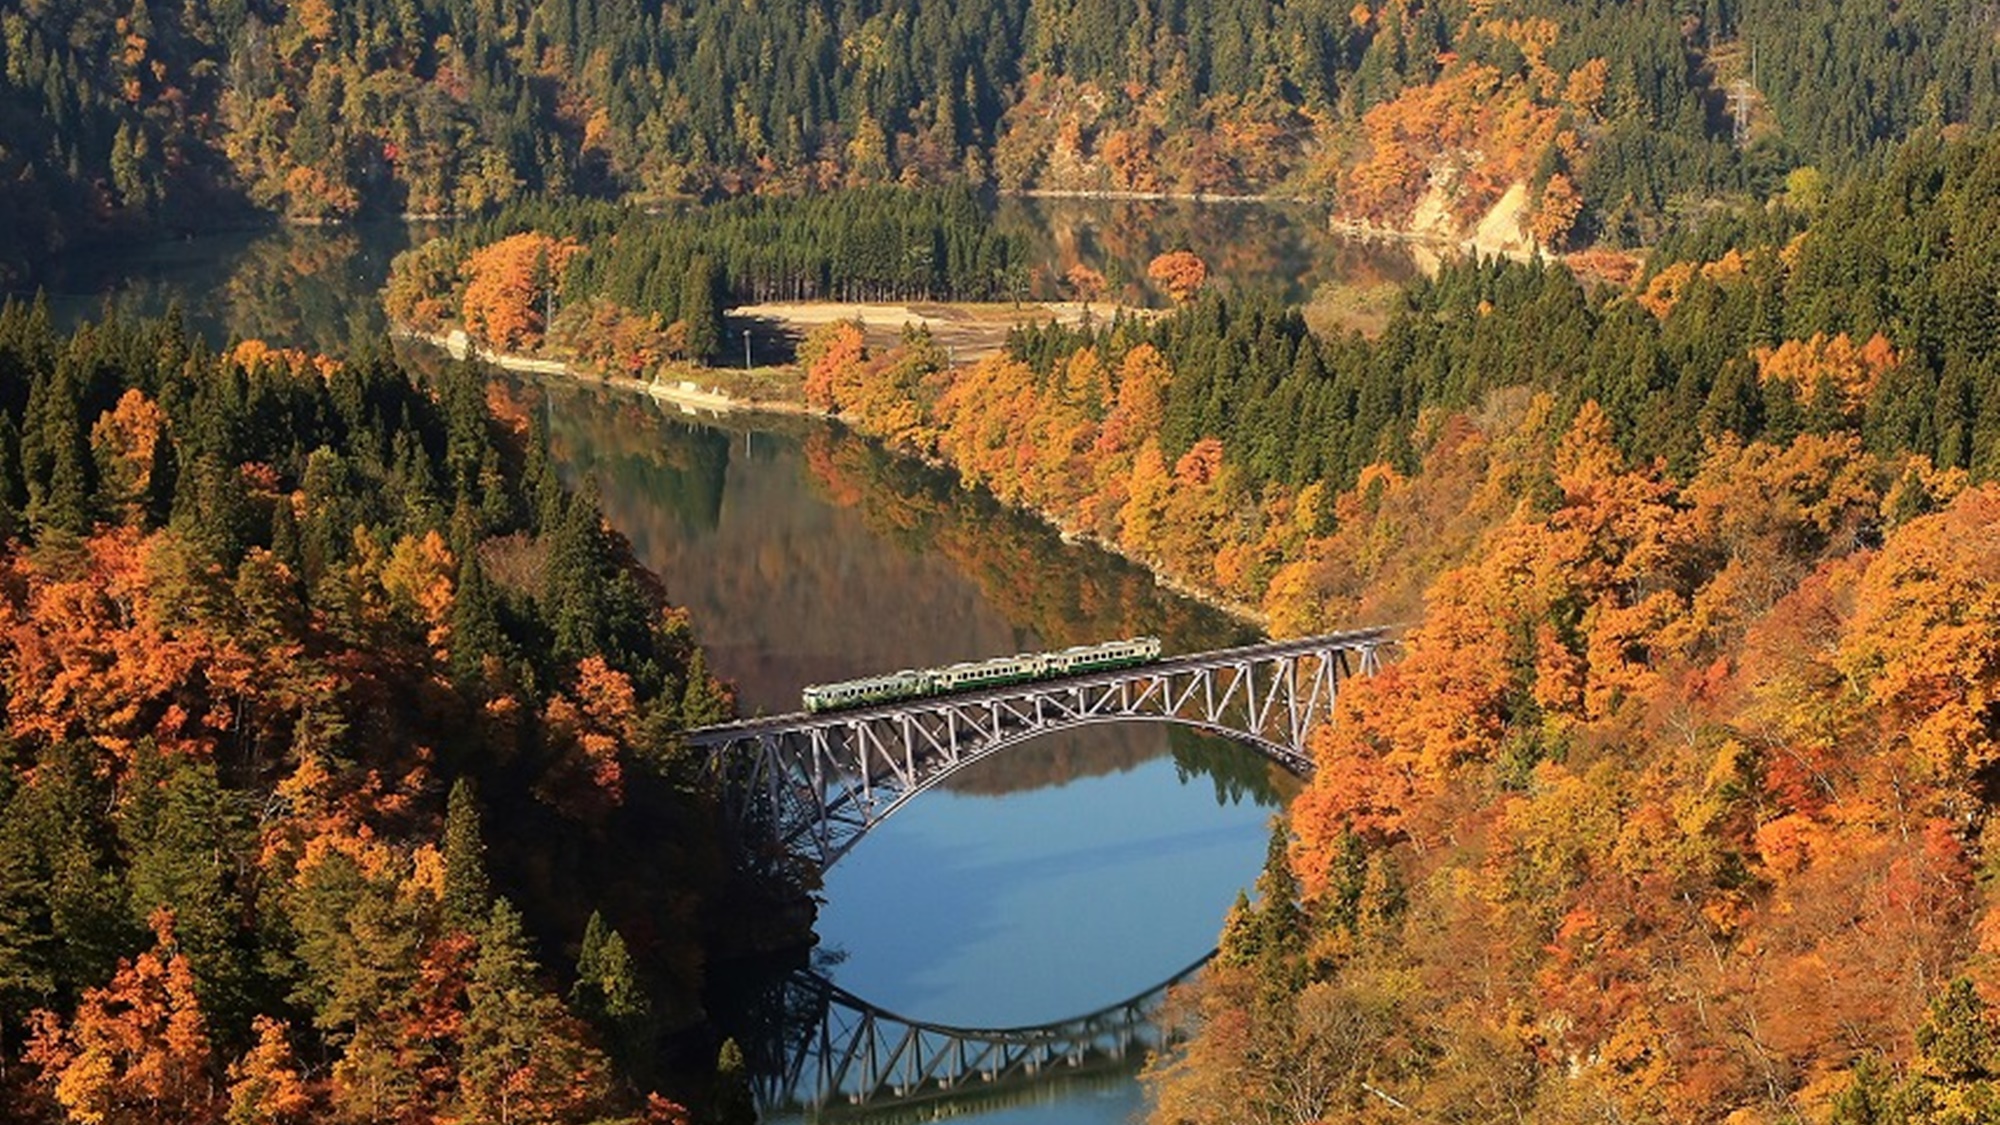 *【只見線】紅葉に彩られた只見線第一橋梁。秋限定の絶景をお見逃し無く。